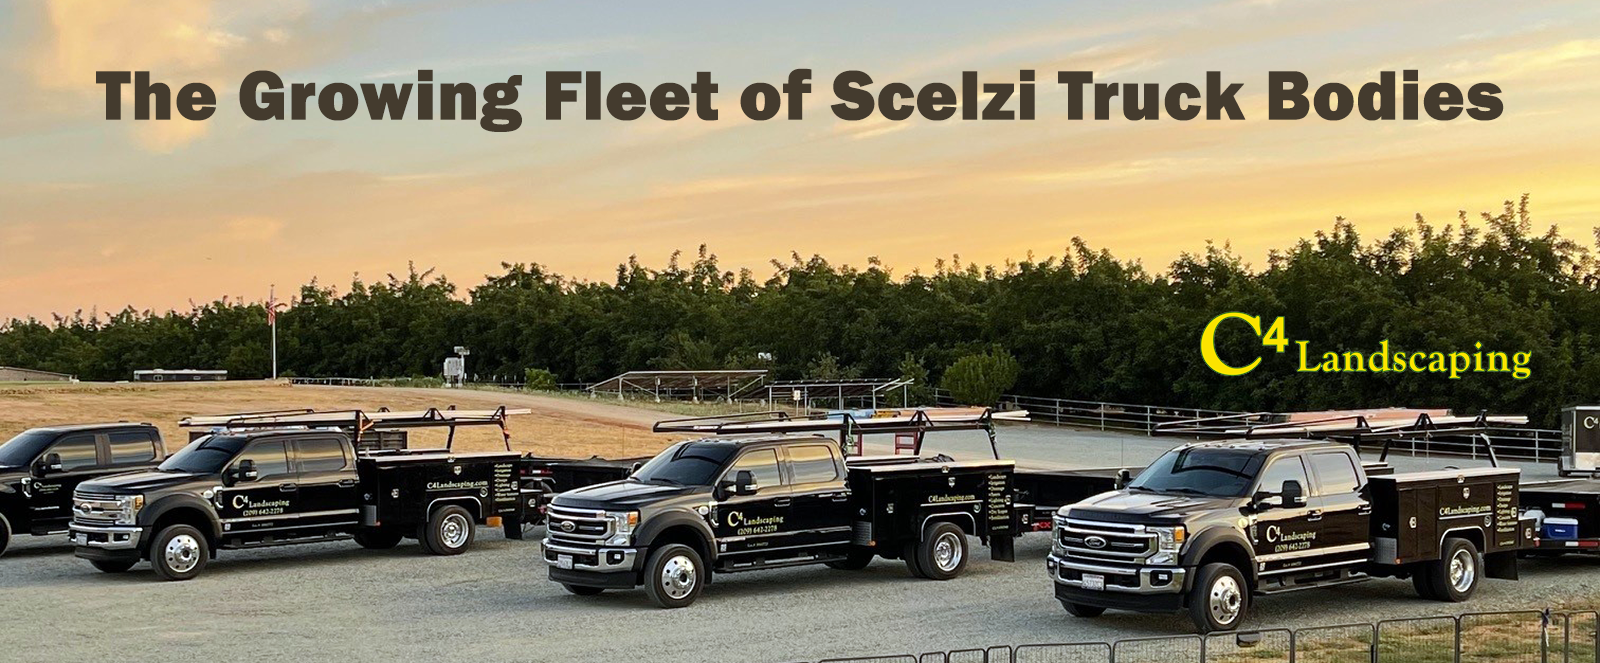 Scelzi Black trucks for C4 landscaping